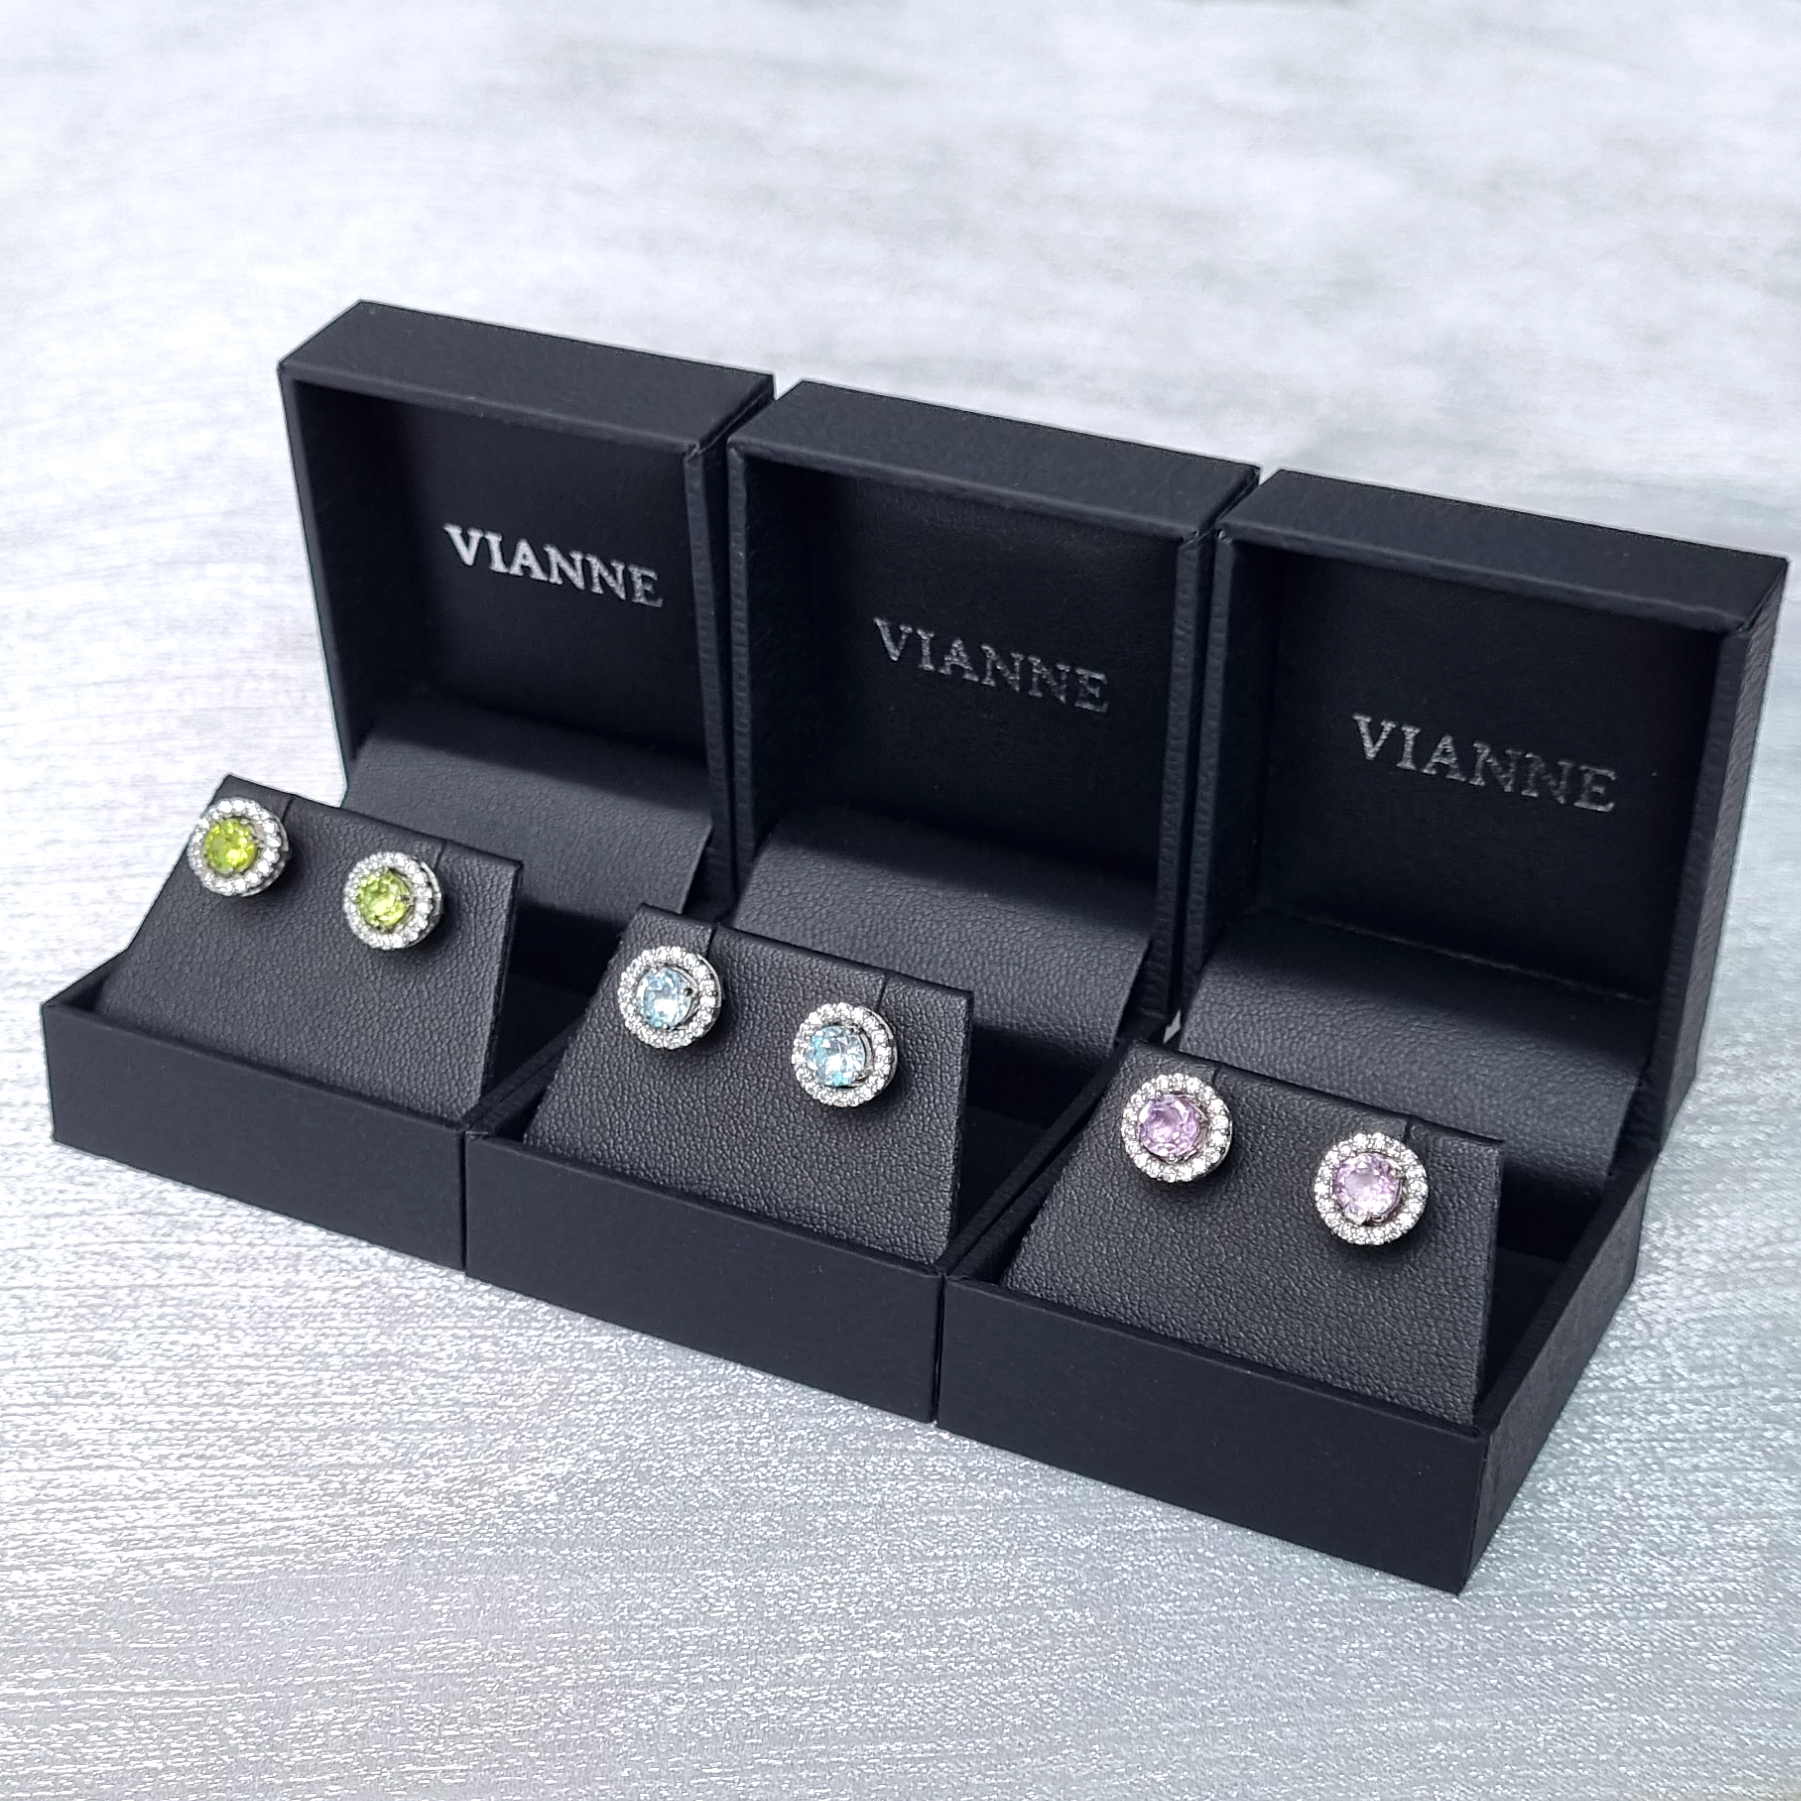 Vianne Jewellery earring box.